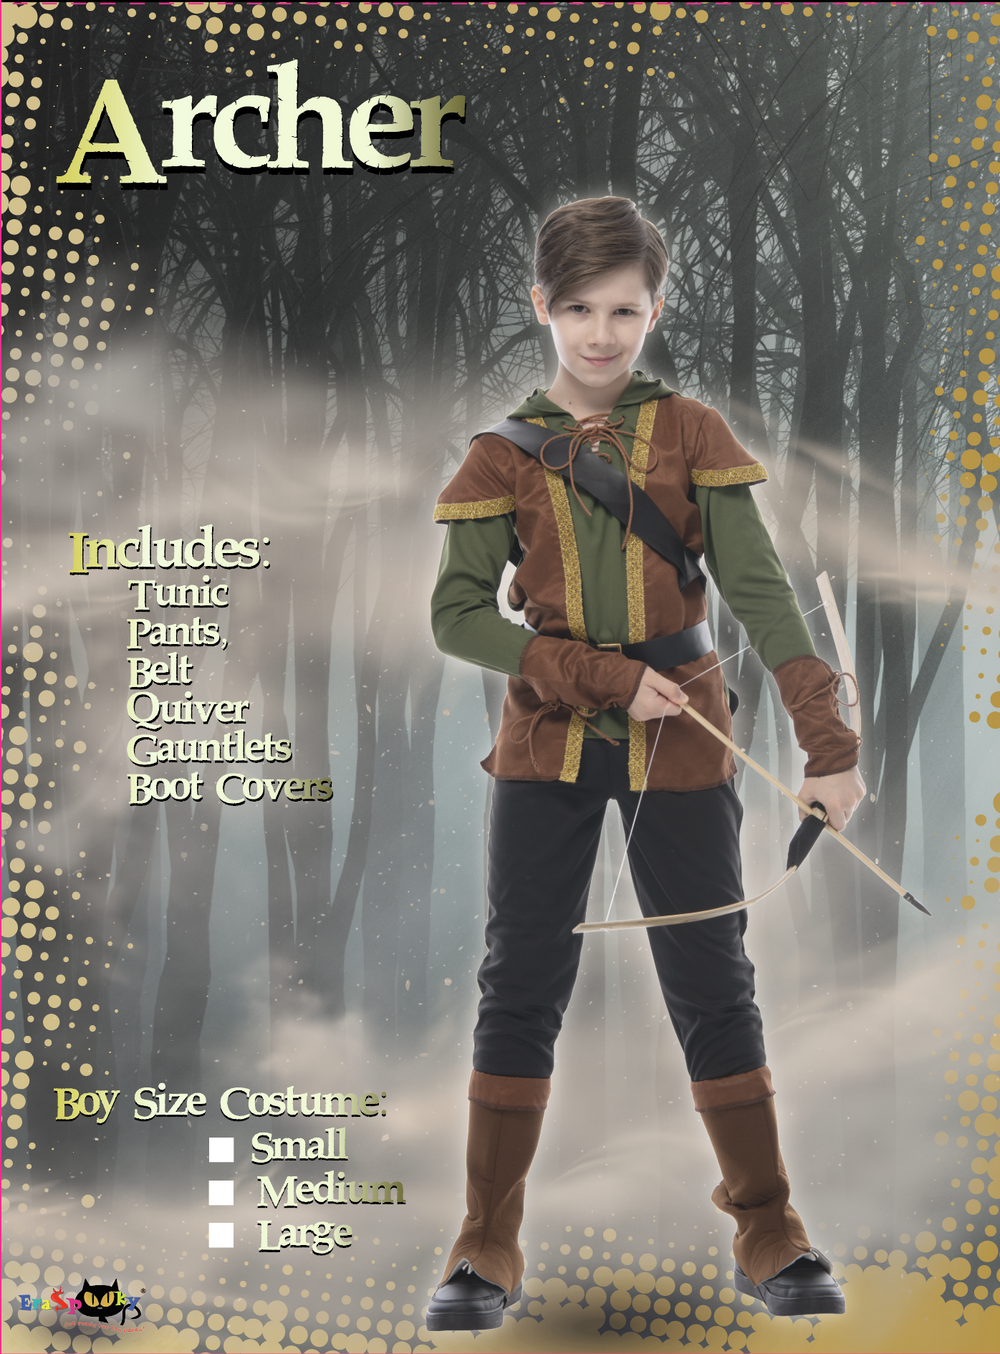 EraSpooky Costume d'Halloween Robin des bois pour garçon Tenue de chasseur d'archer médiéval